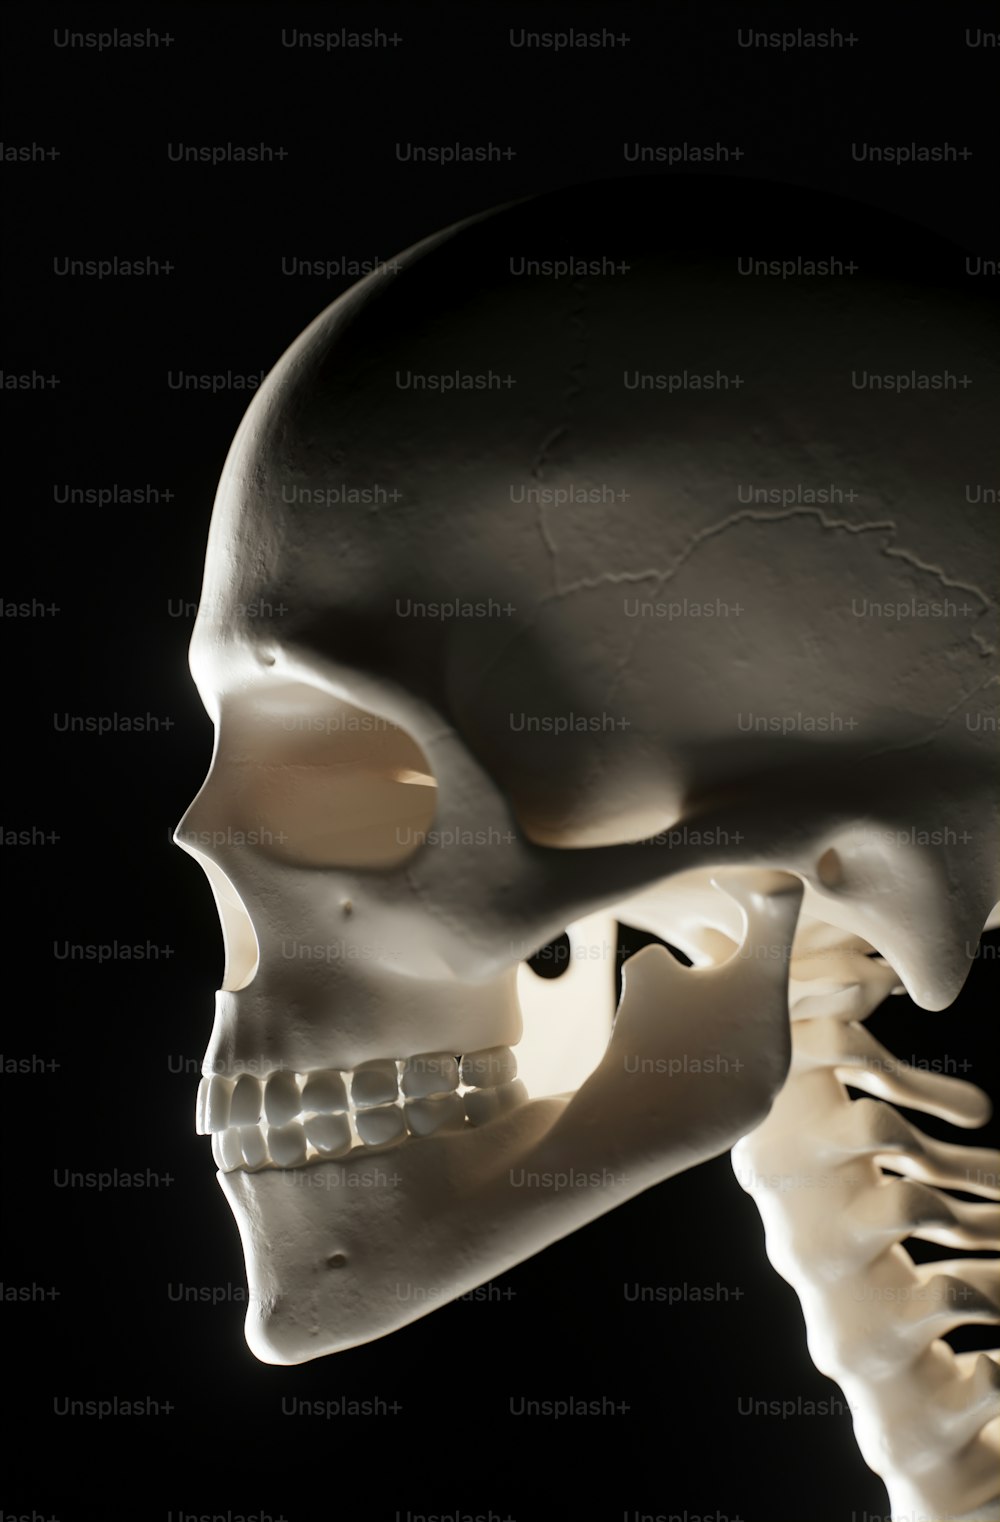 下顎と下顎を持つ人間の頭蓋骨のモデル